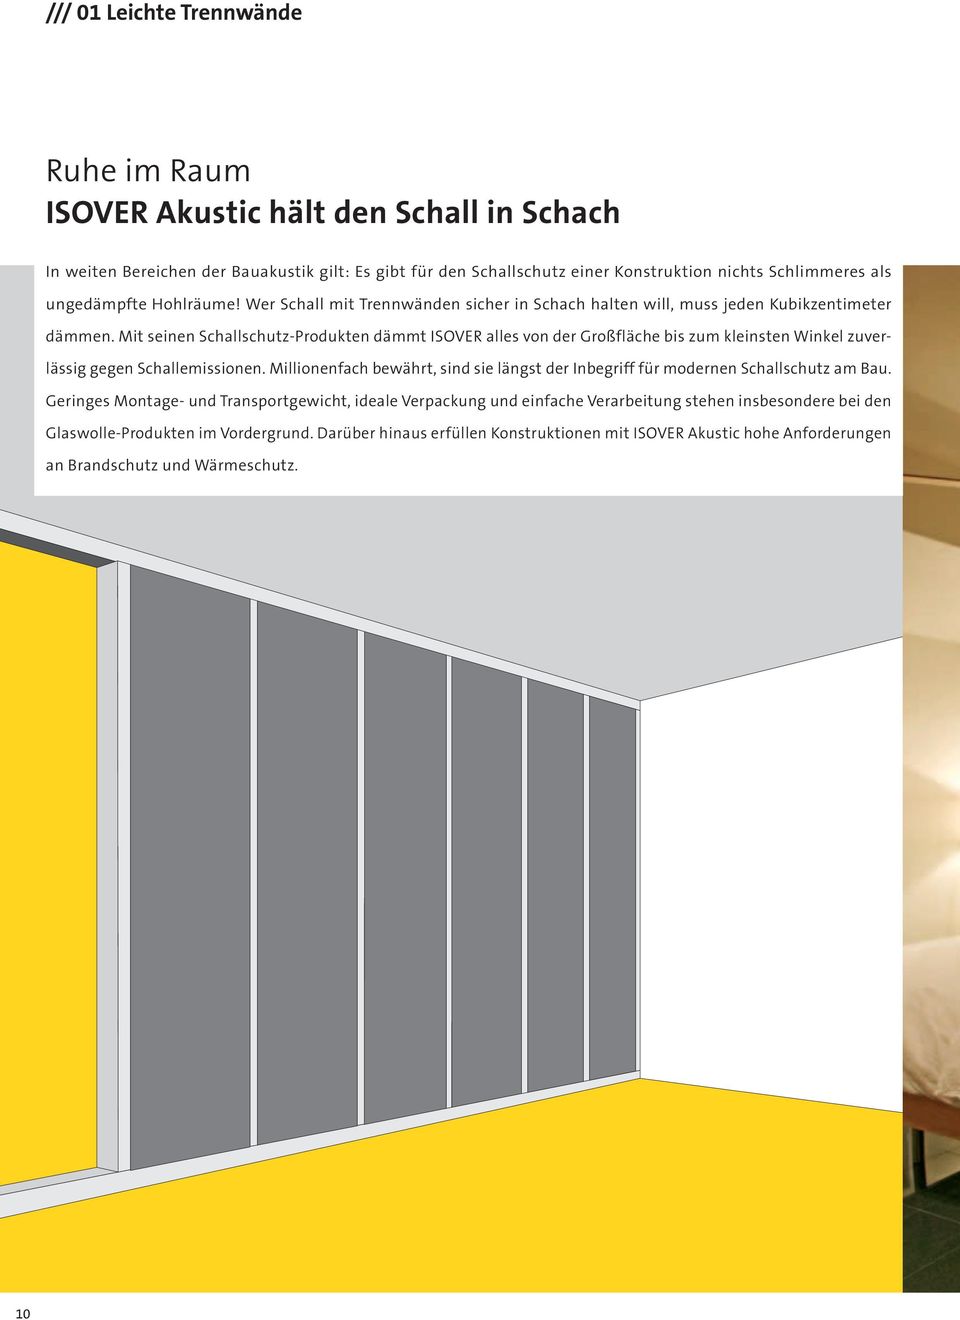 Mit seinen Schallschutz-Produkten dämmt ISOVER alles von der Großfläche bis zum kleinsten Winkel zuverlässig gegen Schallemissionen.